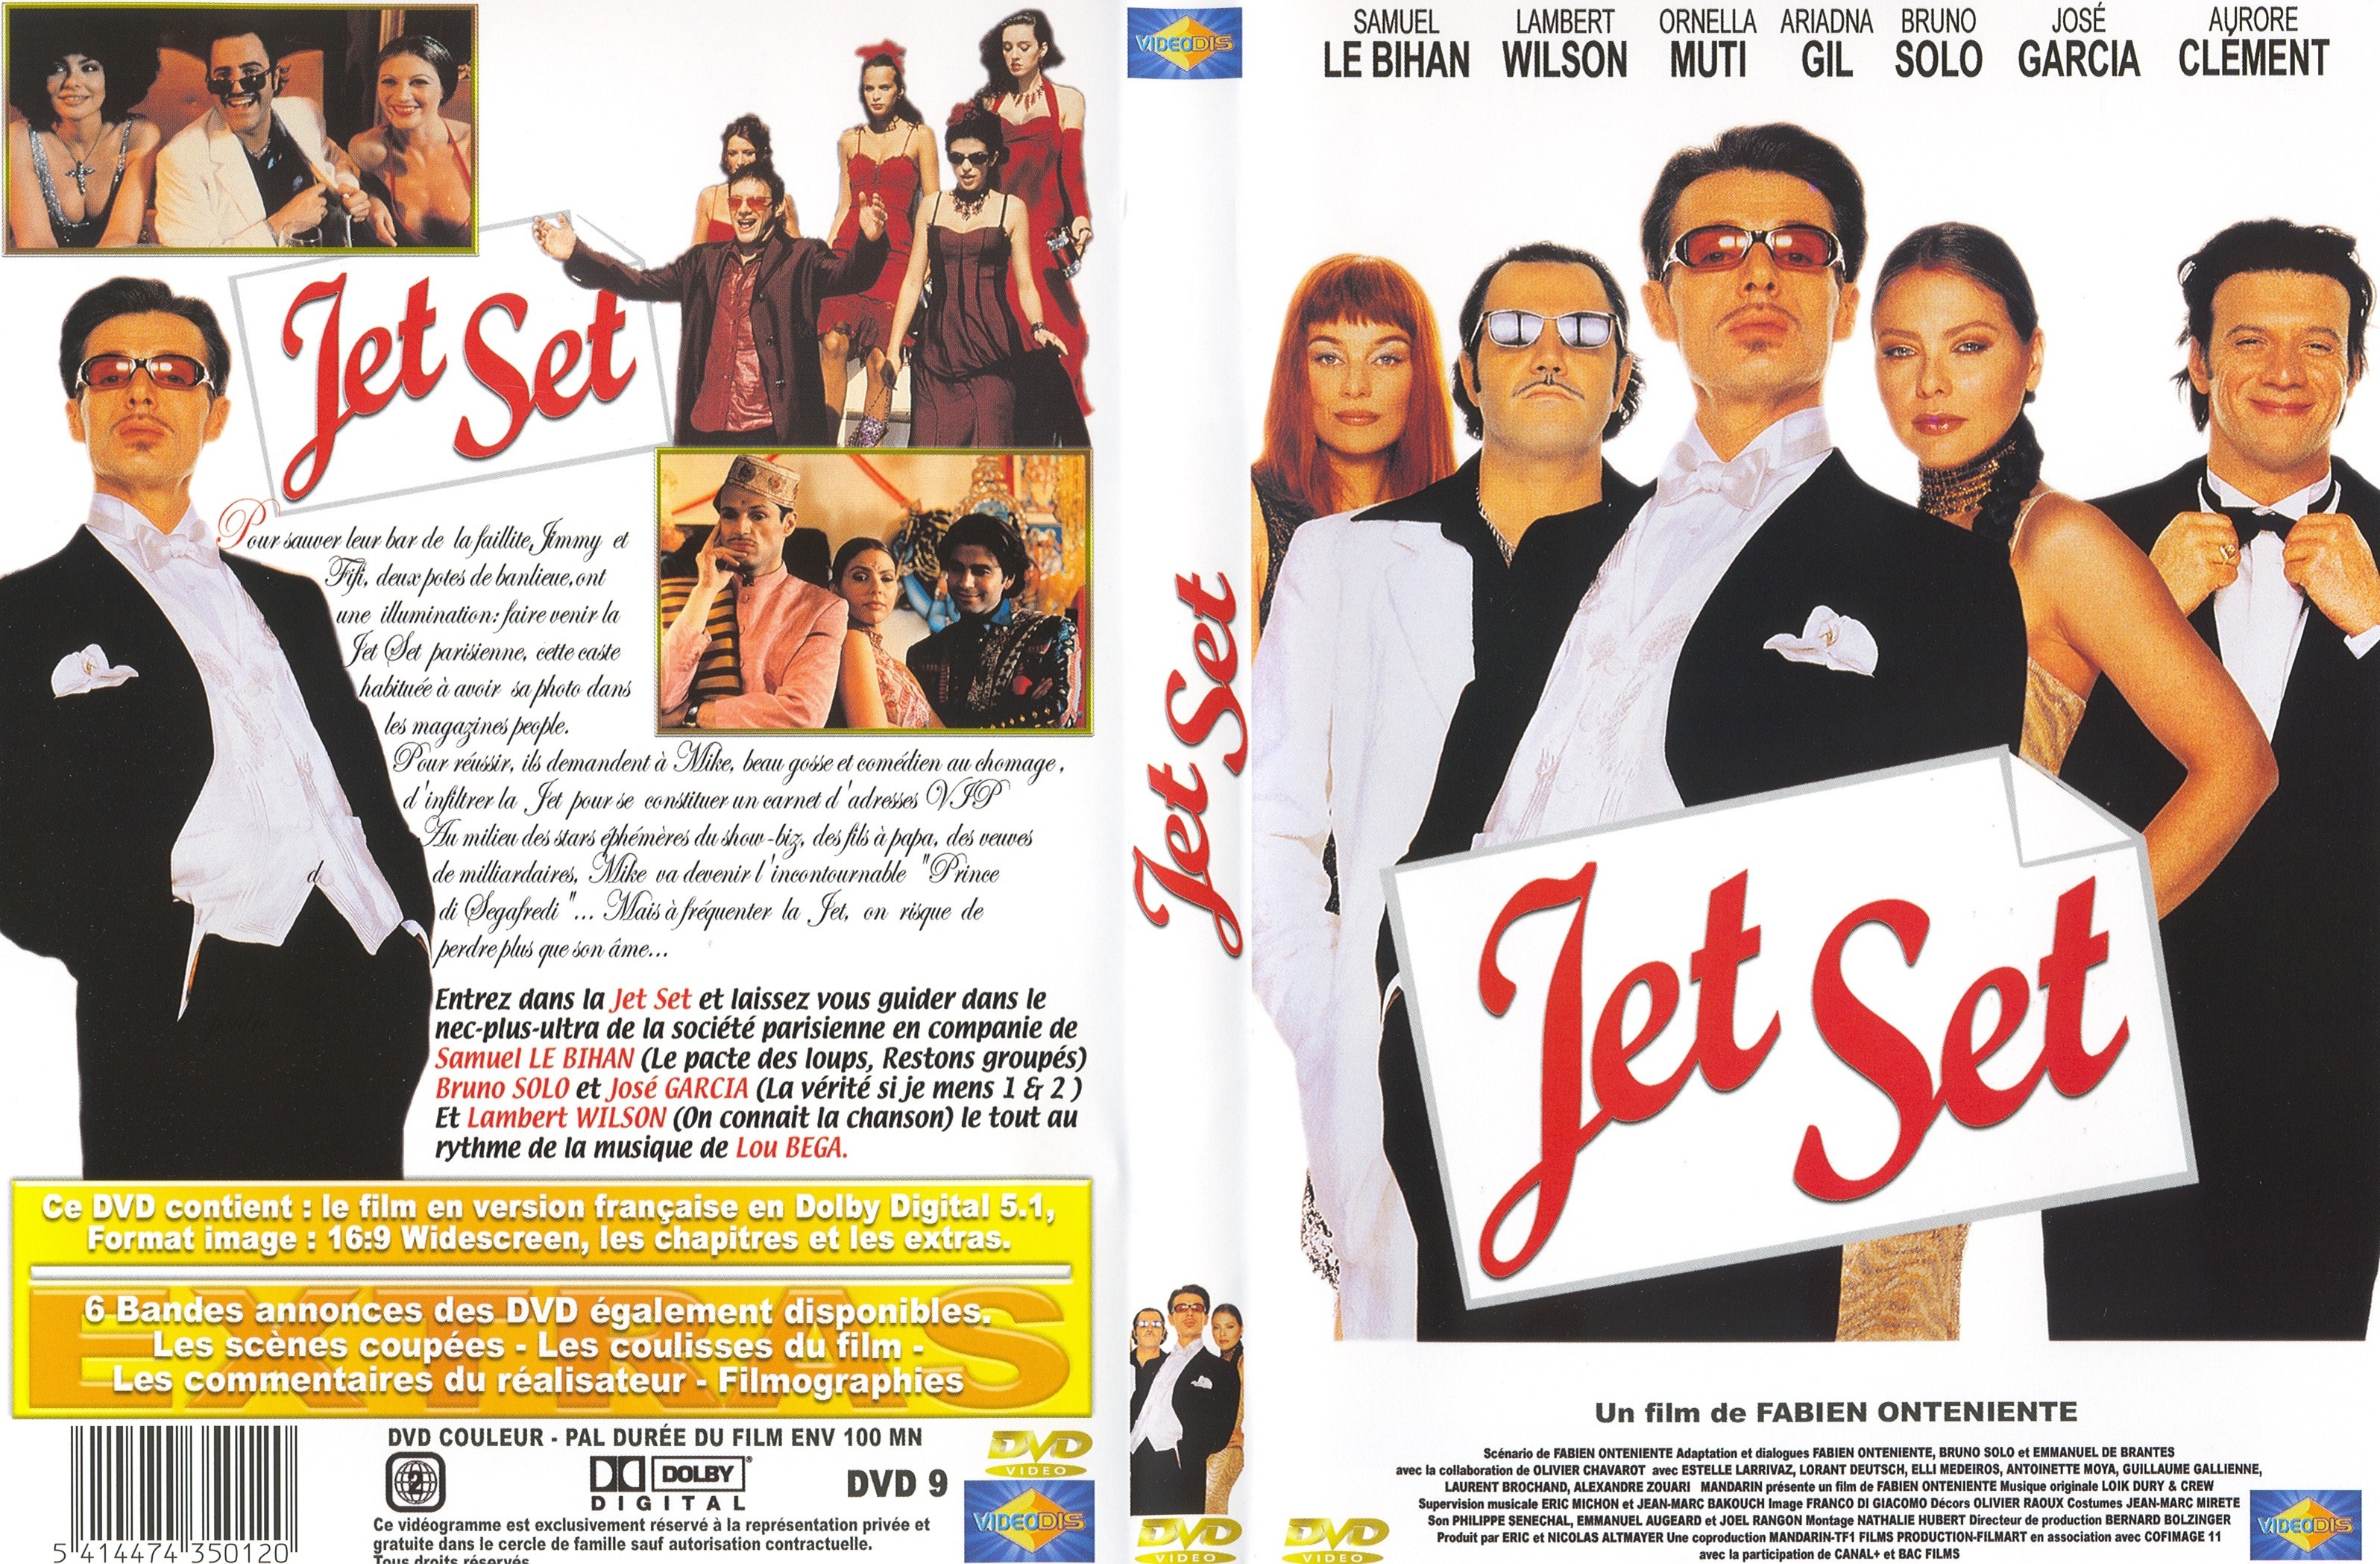 Jaquette DVD Jet set v3